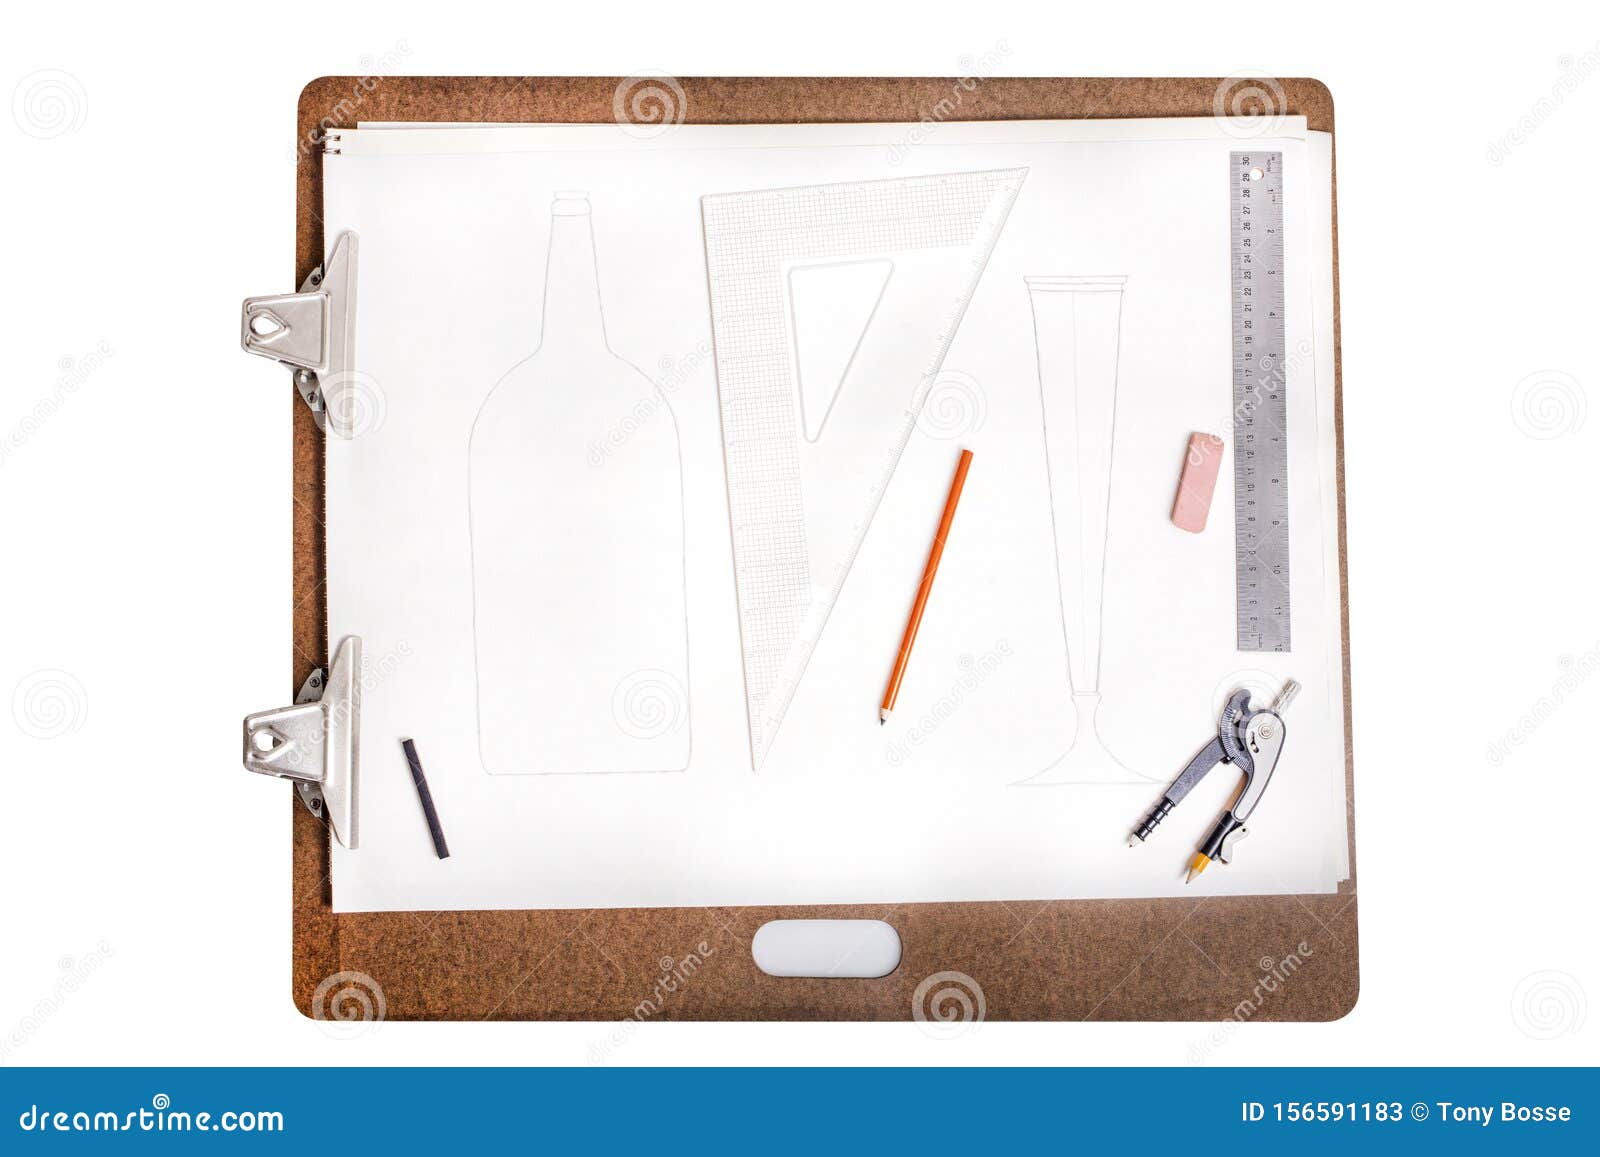 Scribbly Sketch Pad A4 140 GSM  35 Sheets 21cm X 297cm Suitabl   Neelgagan